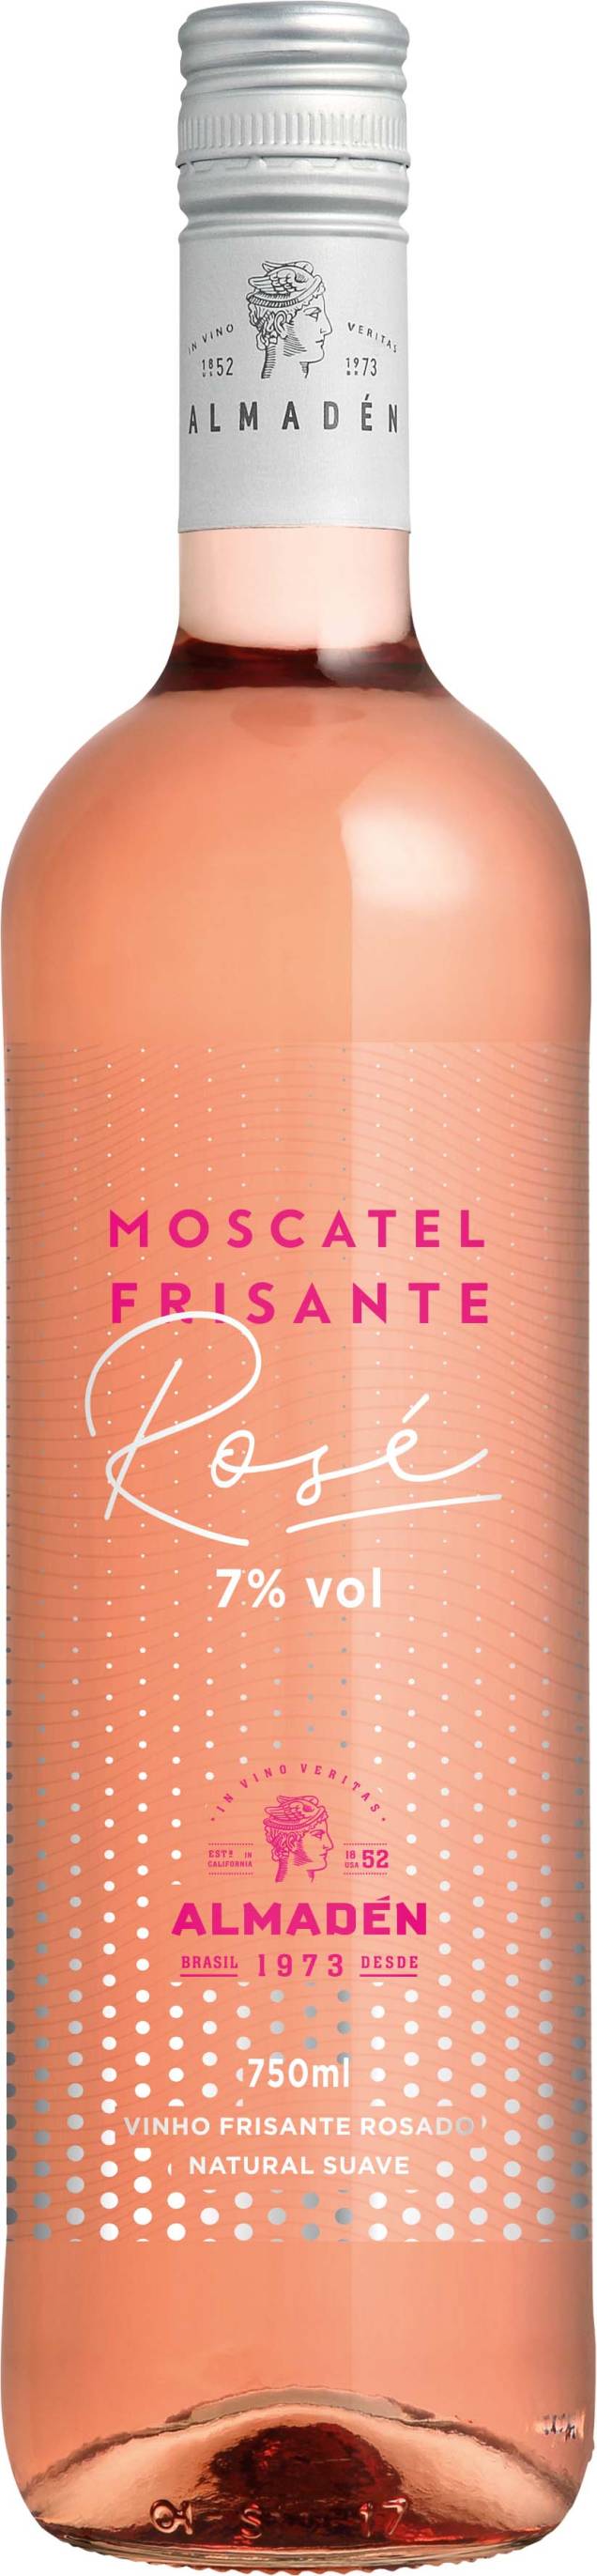 Moscatel Frisante Rosé, da Almadén